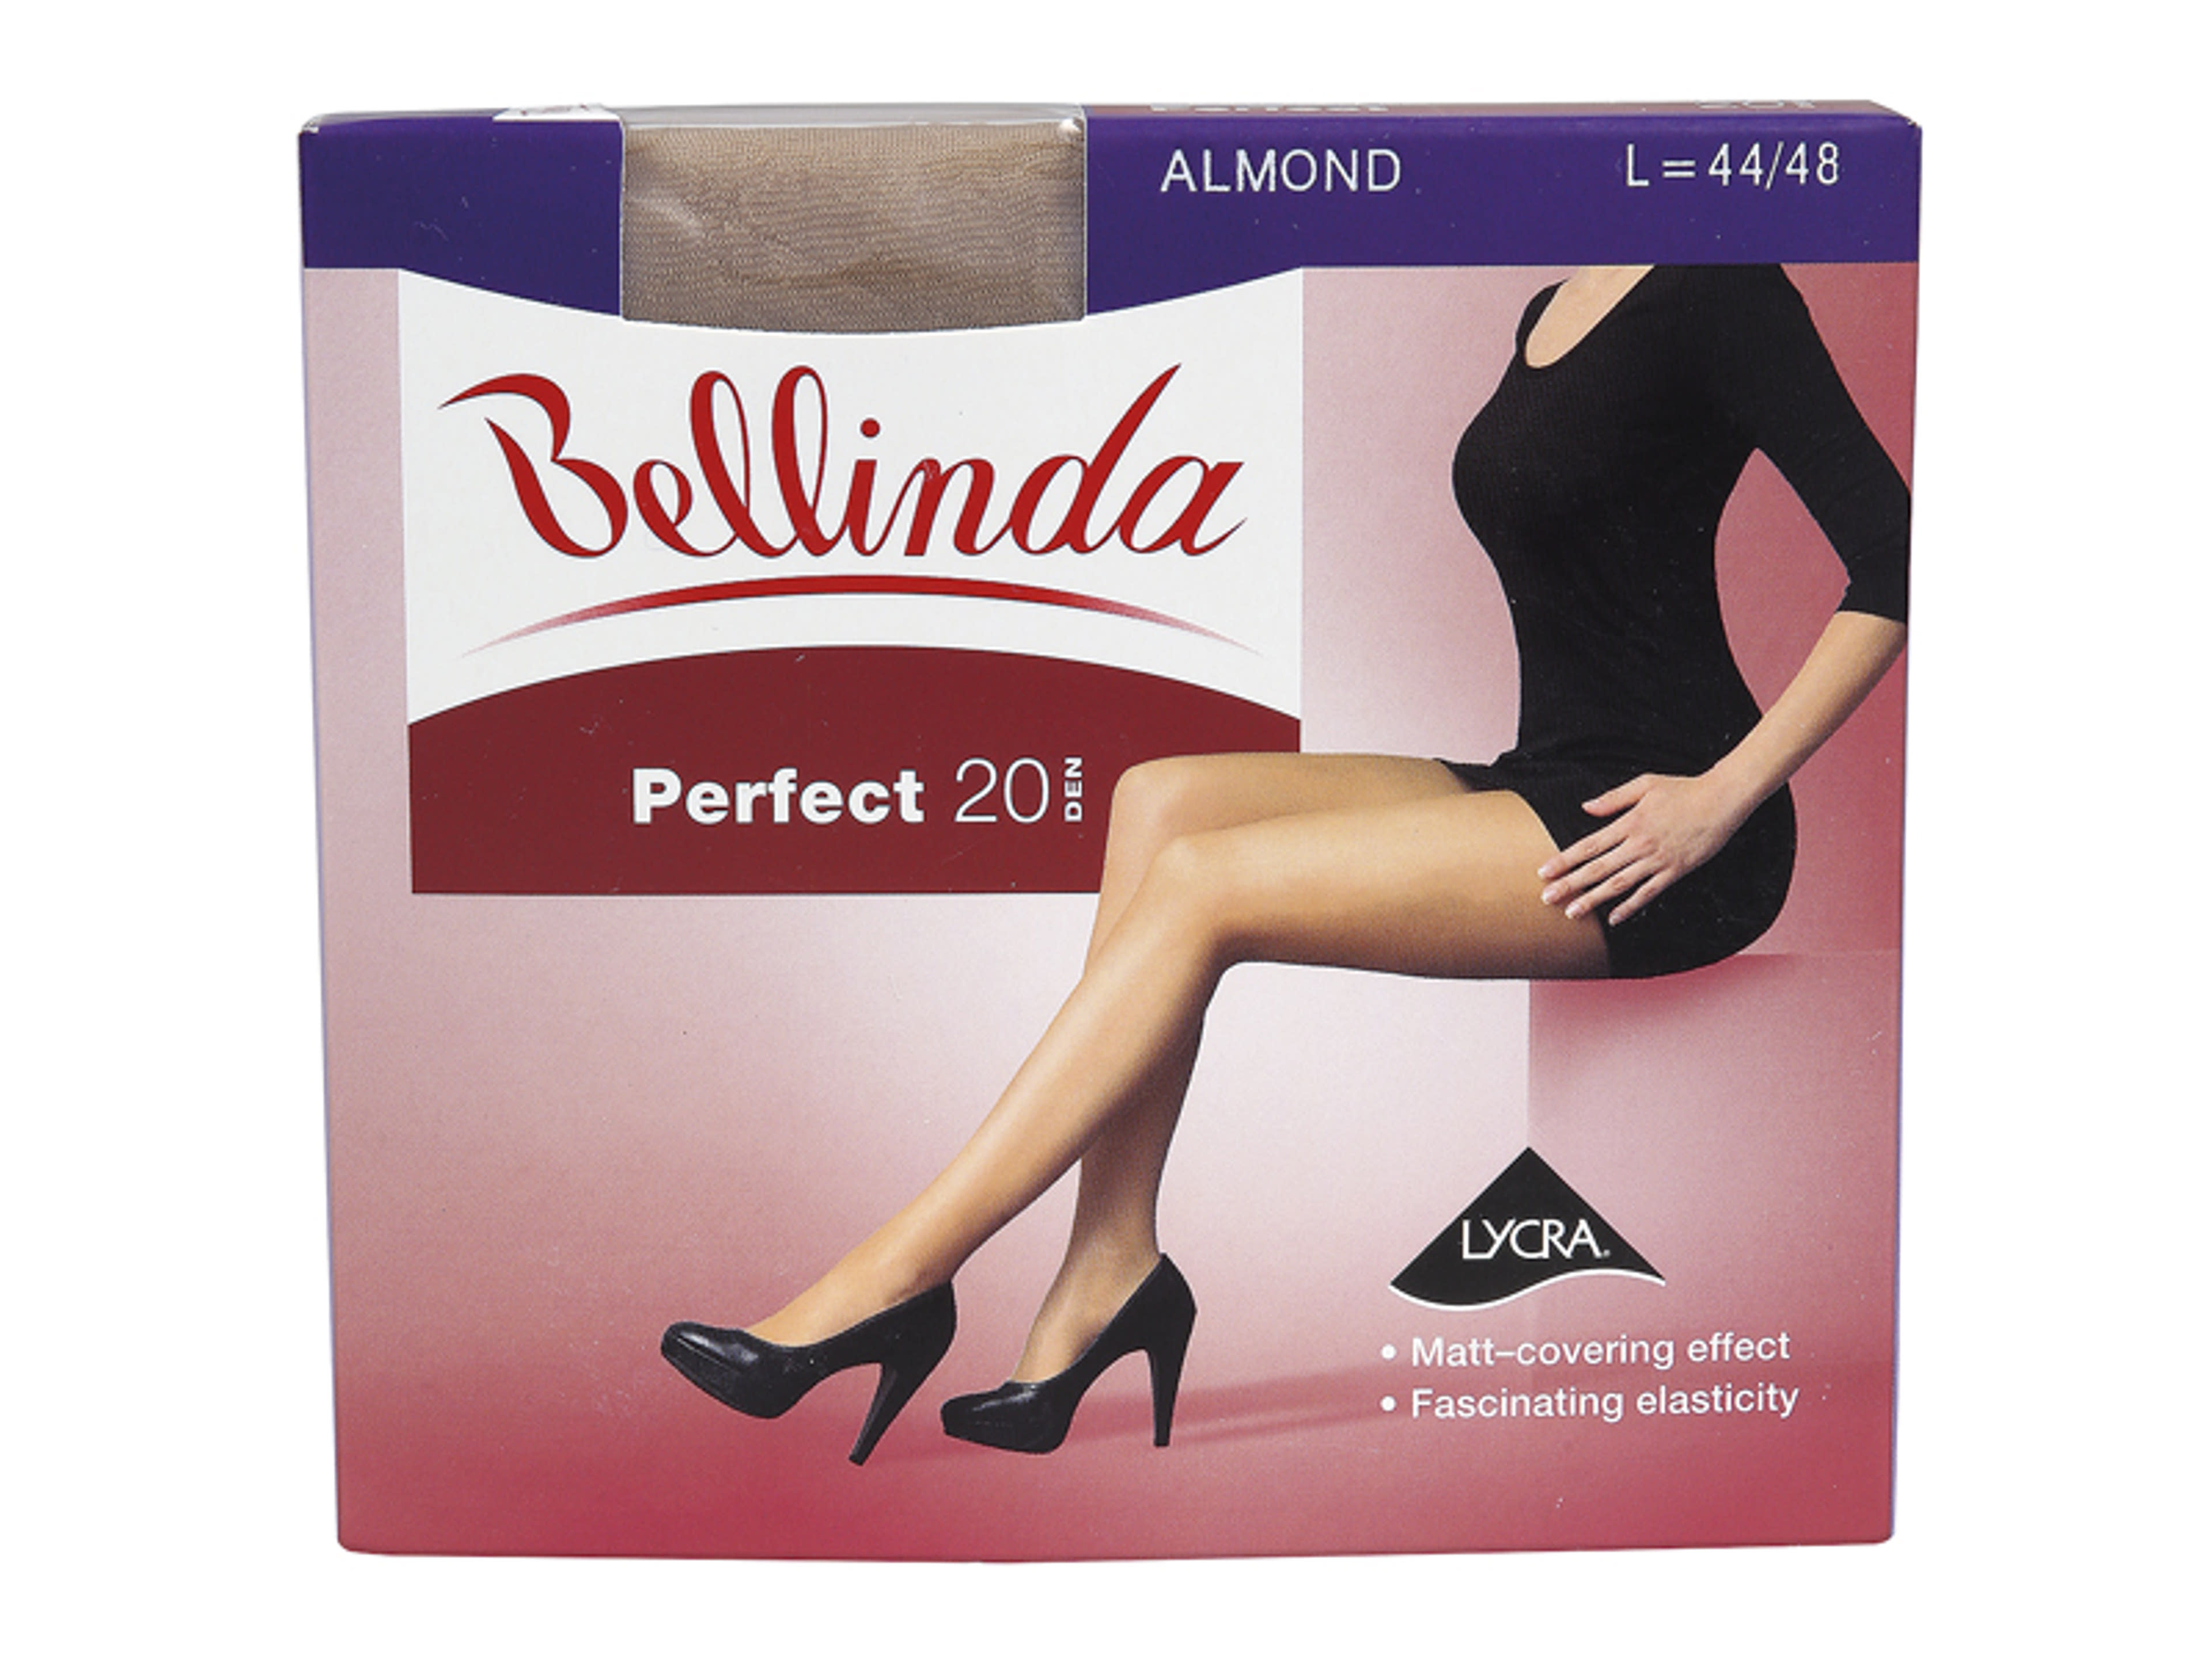 Bellinda Perfect 20 Den Almond L Harisnya - 1 db